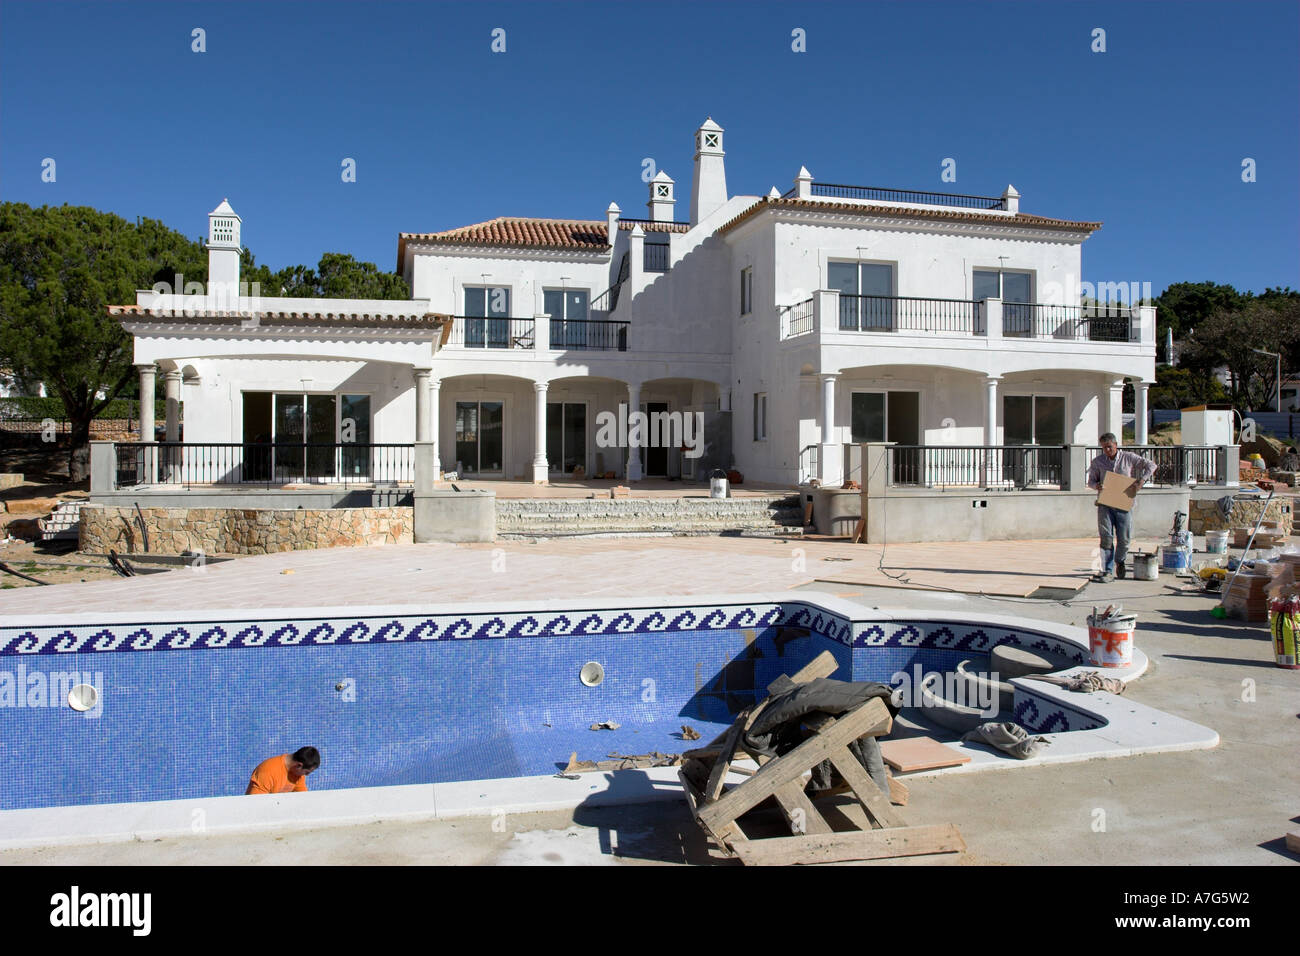 Une marque nouvelle villa de luxe dans le soleil est presque terminée. Algarve, Portugal Banque D'Images